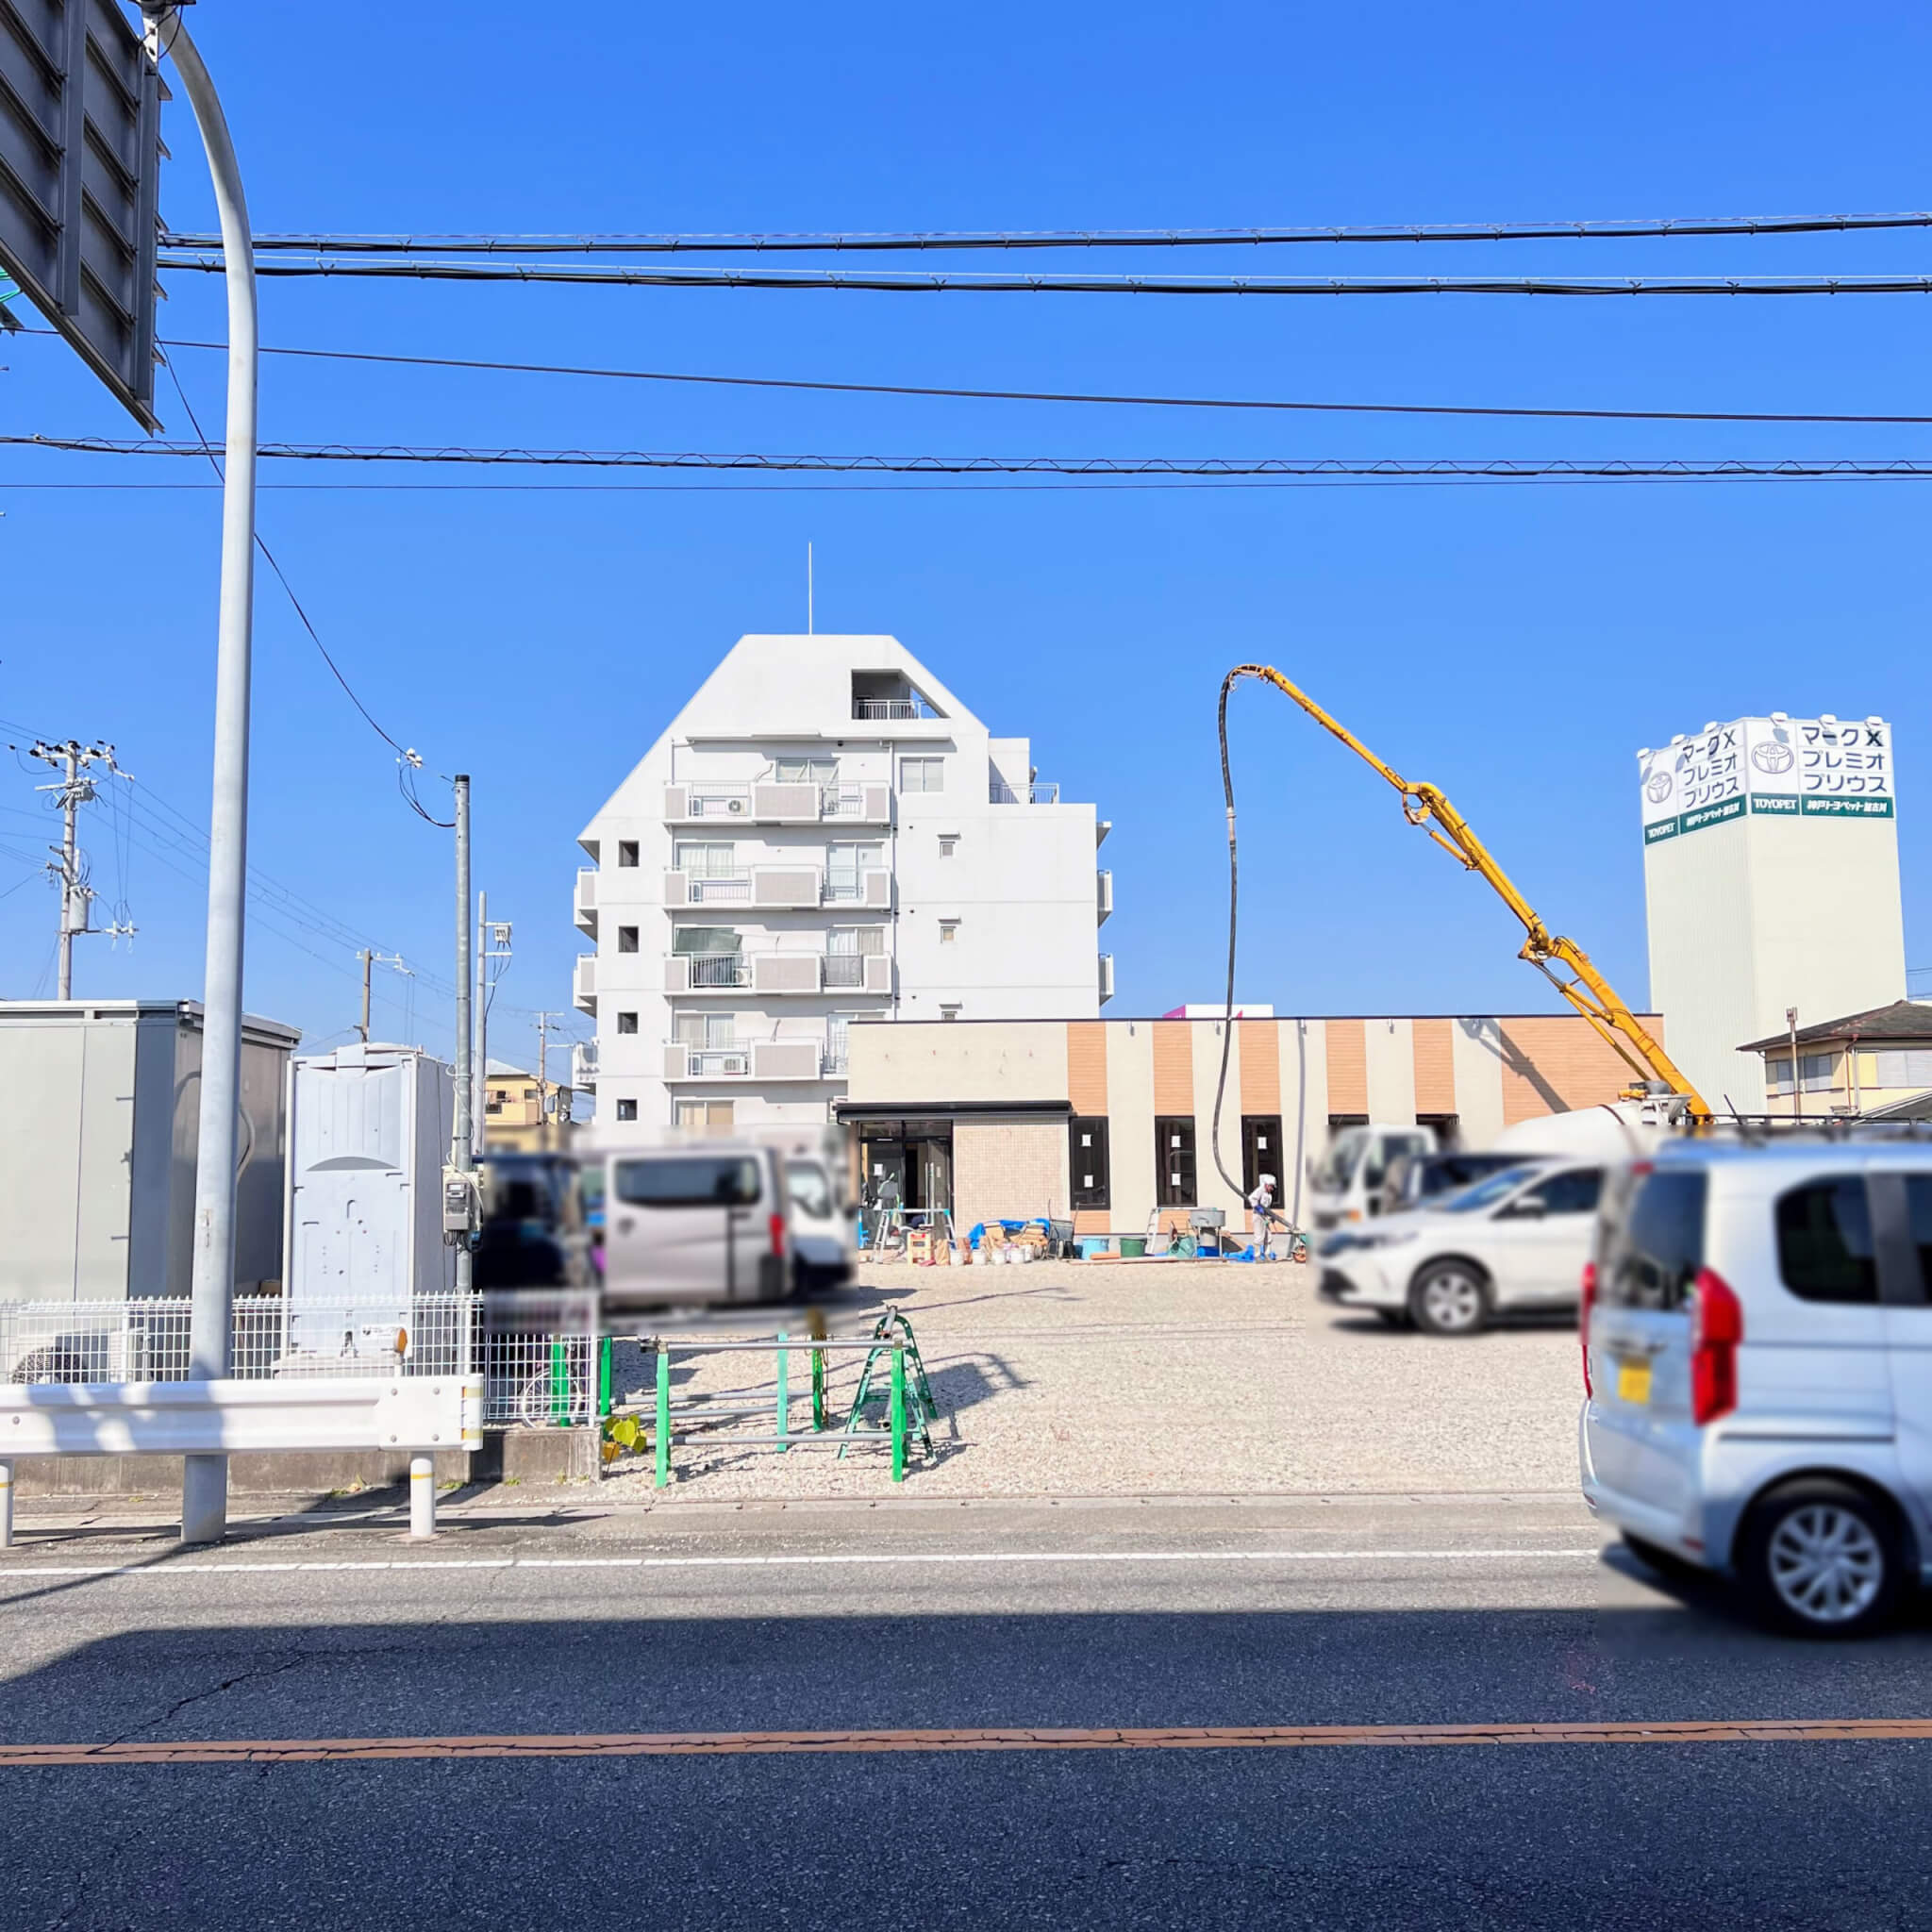 和食のさと加古川店の建物と敷地の様子